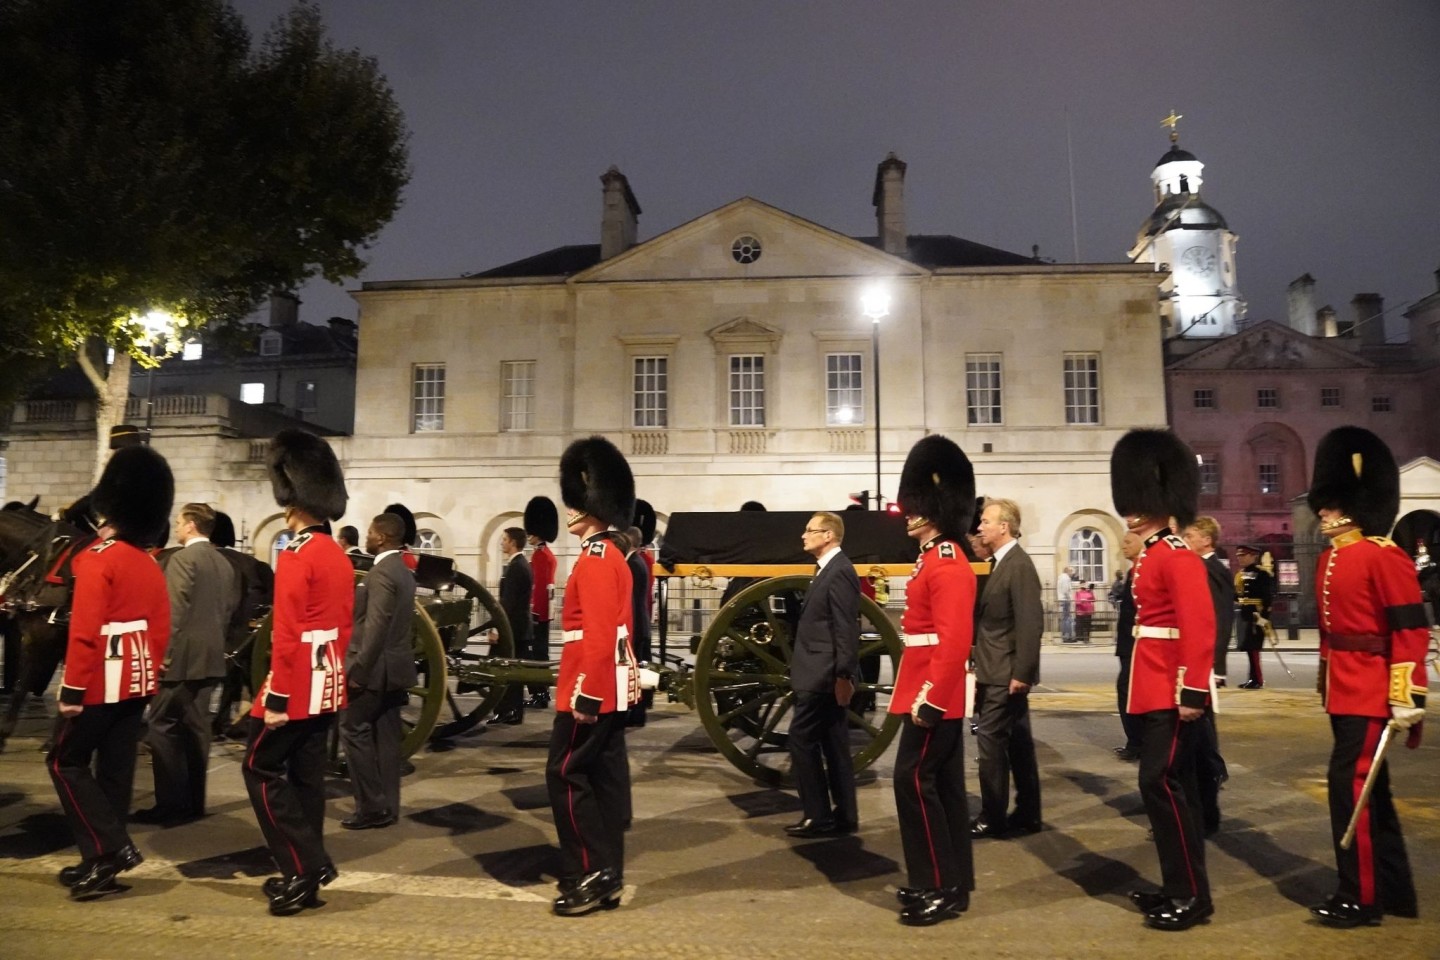 Mitglieder der Königsgarde marschieren bei einer frühmorgendlichen Probe für die Prozession des Sarges von Königin Elizabeth II. vom Buckingham Palace zur Westmister Hall in London.